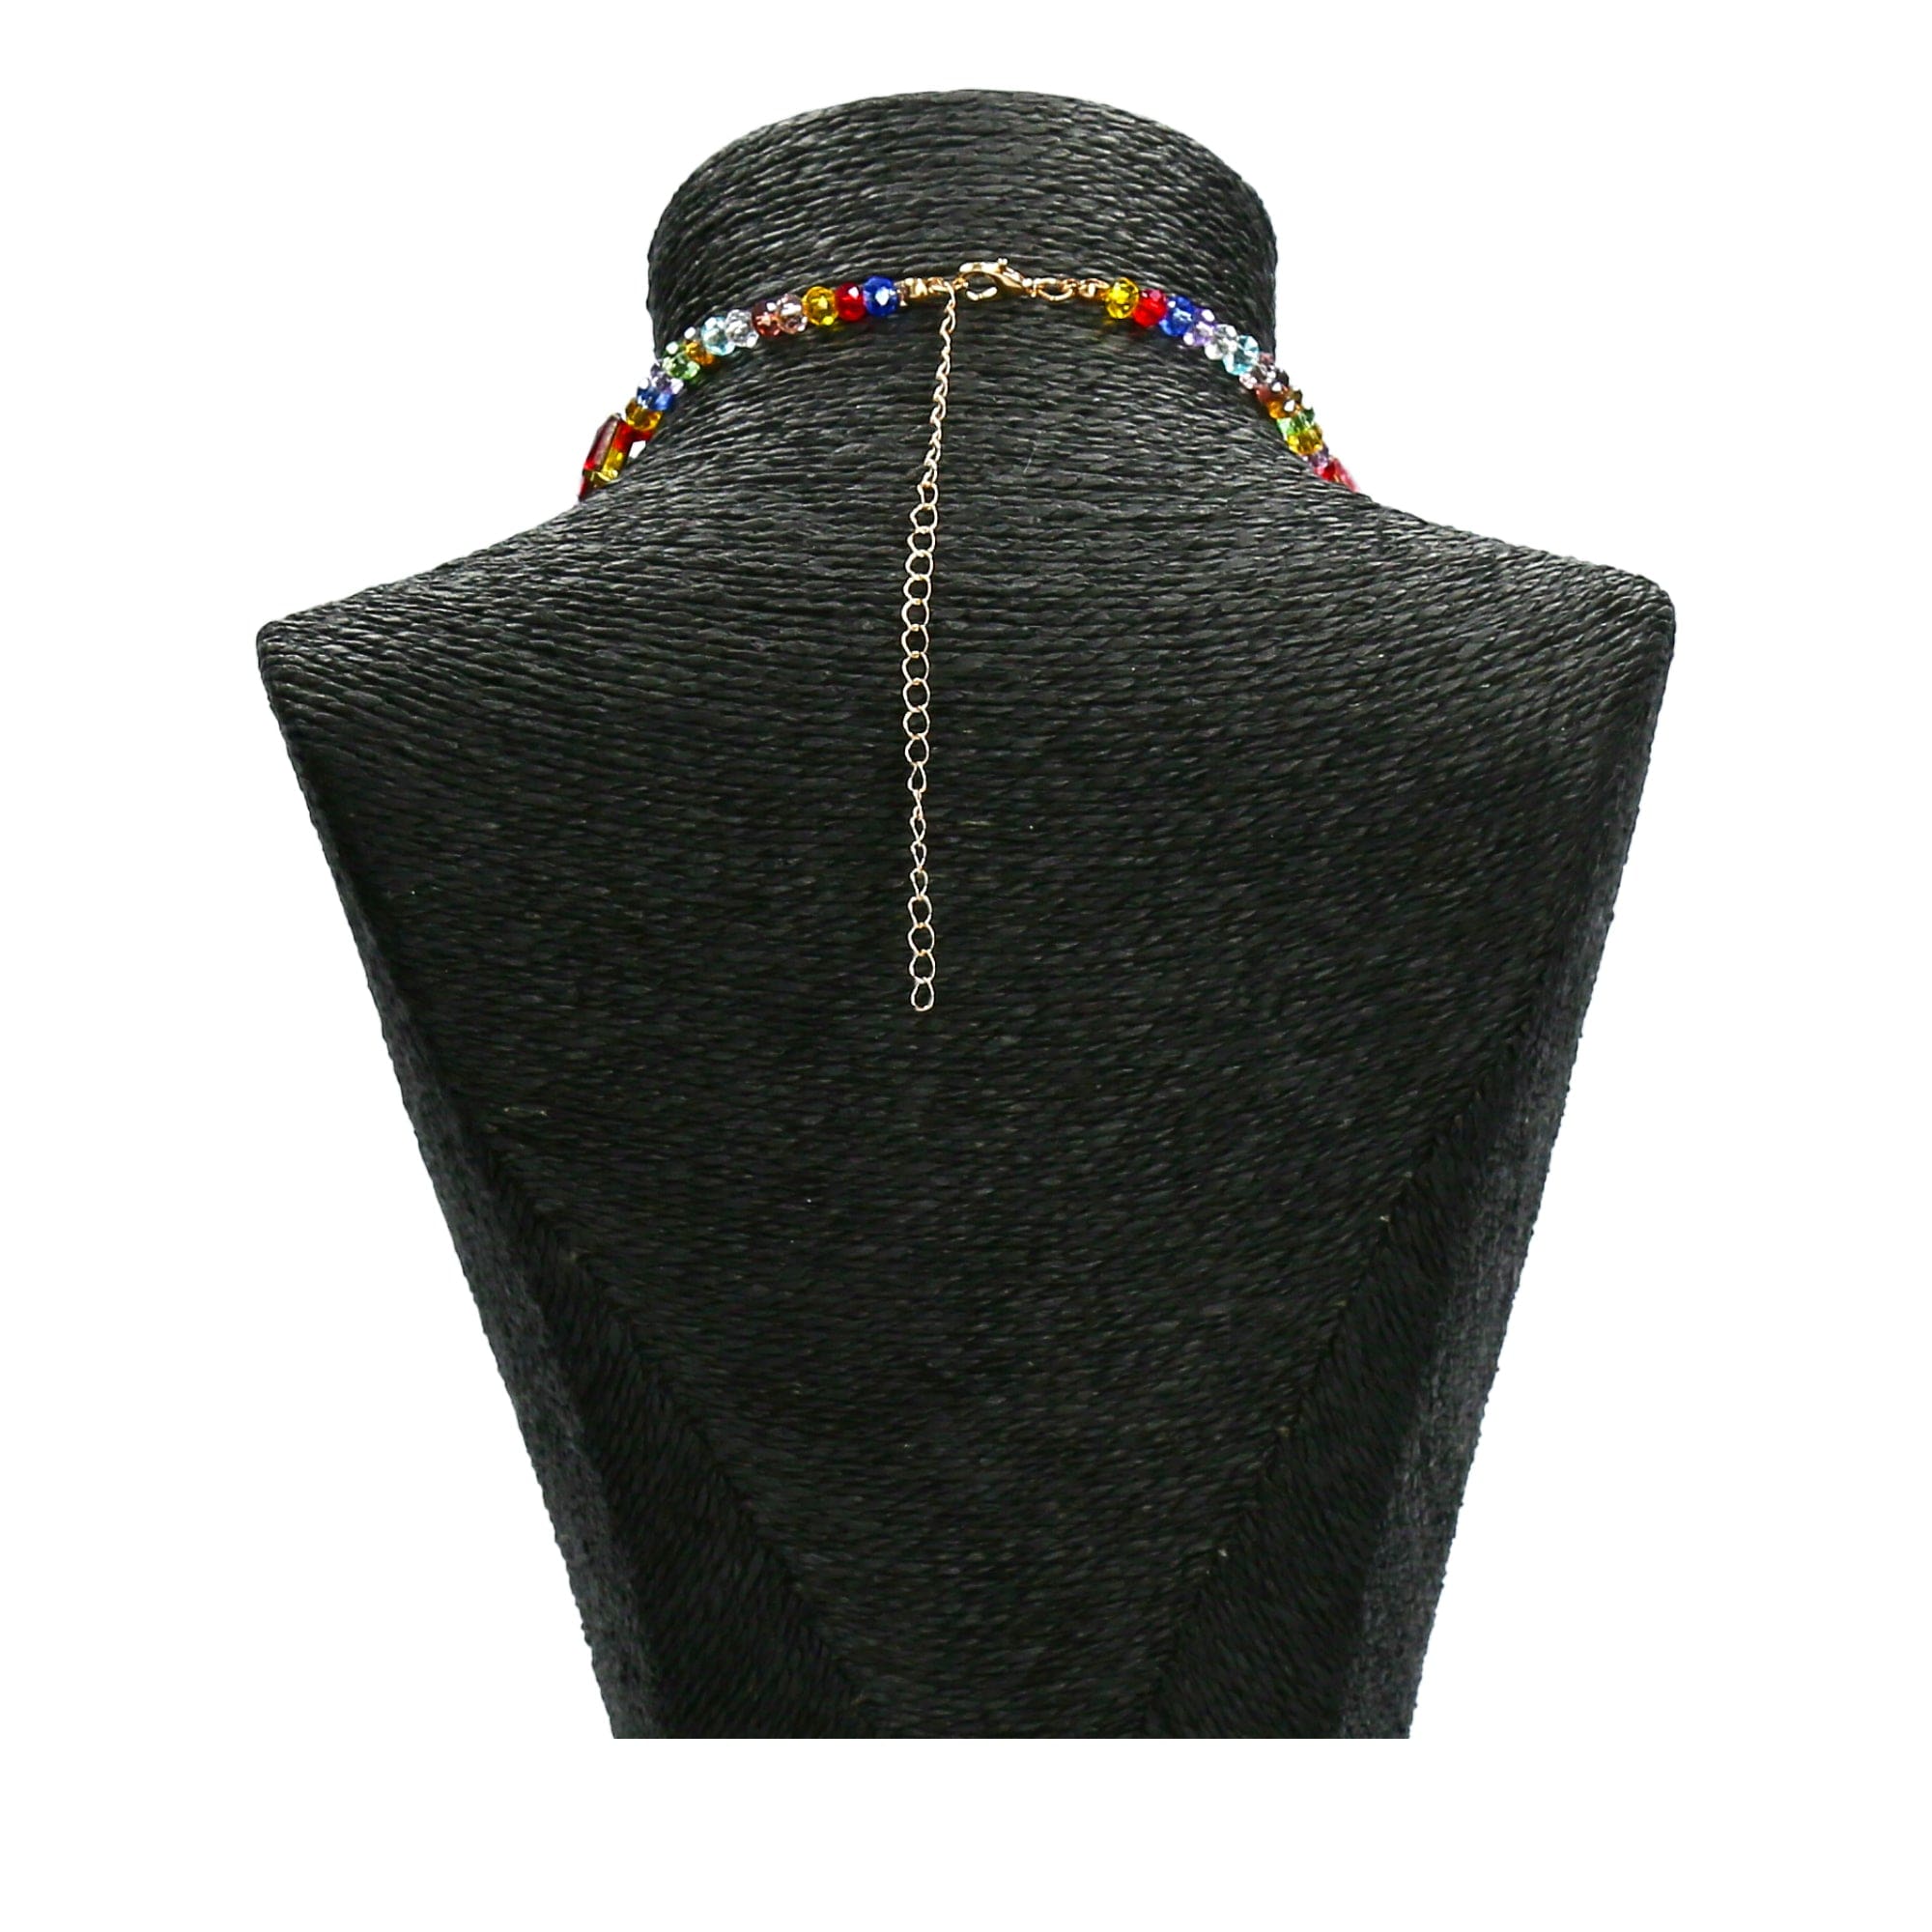 Bianca jewellery kaulakoru - Kaulakoru - Necklace